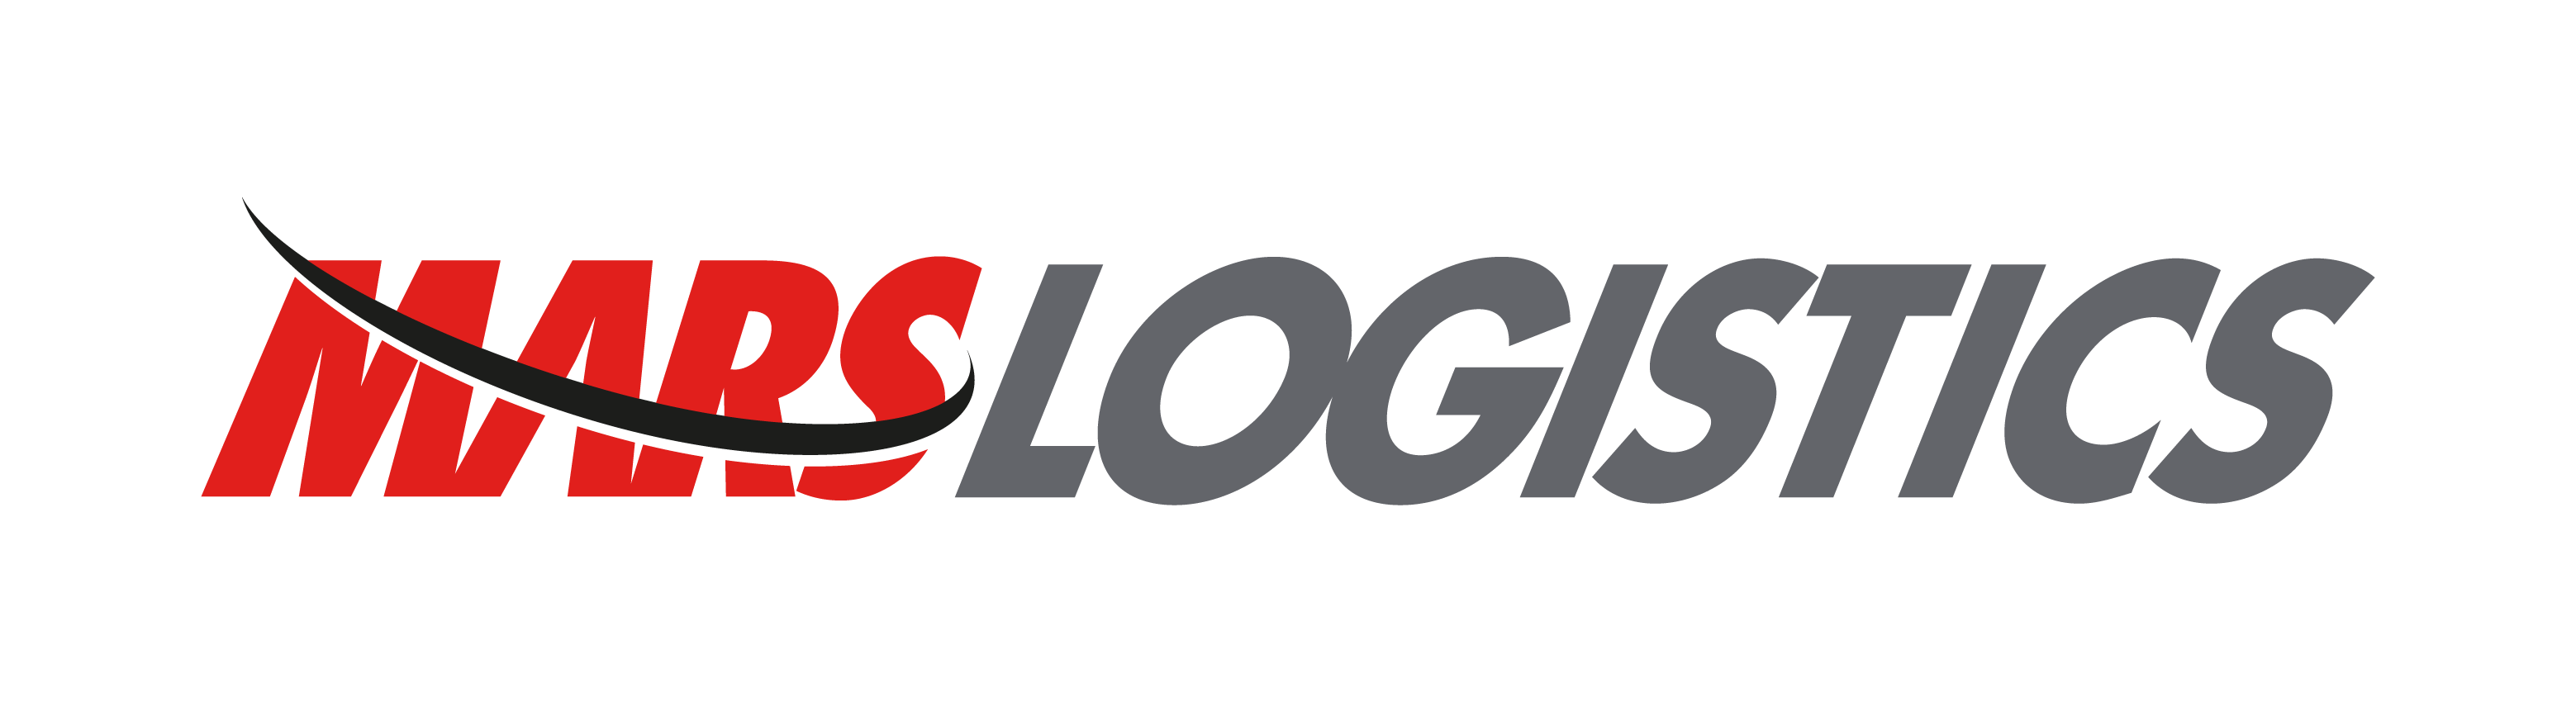 mars-logistics-logo.png